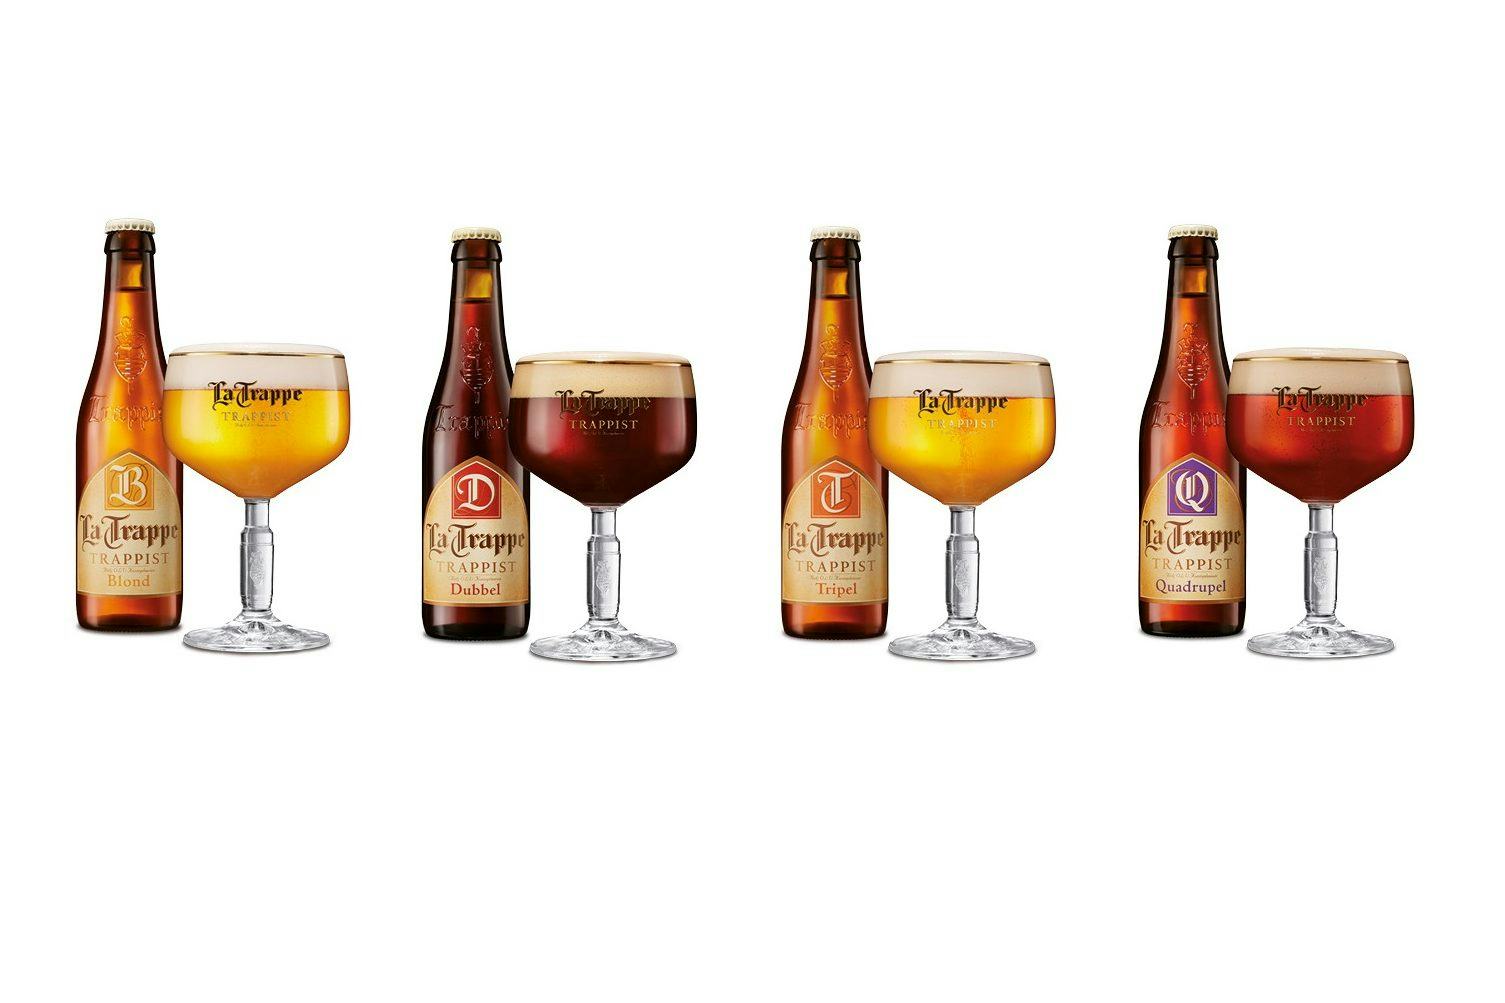 Elf Nederlandse medailles op European Beer Star: vier maal goud voor La Trappe